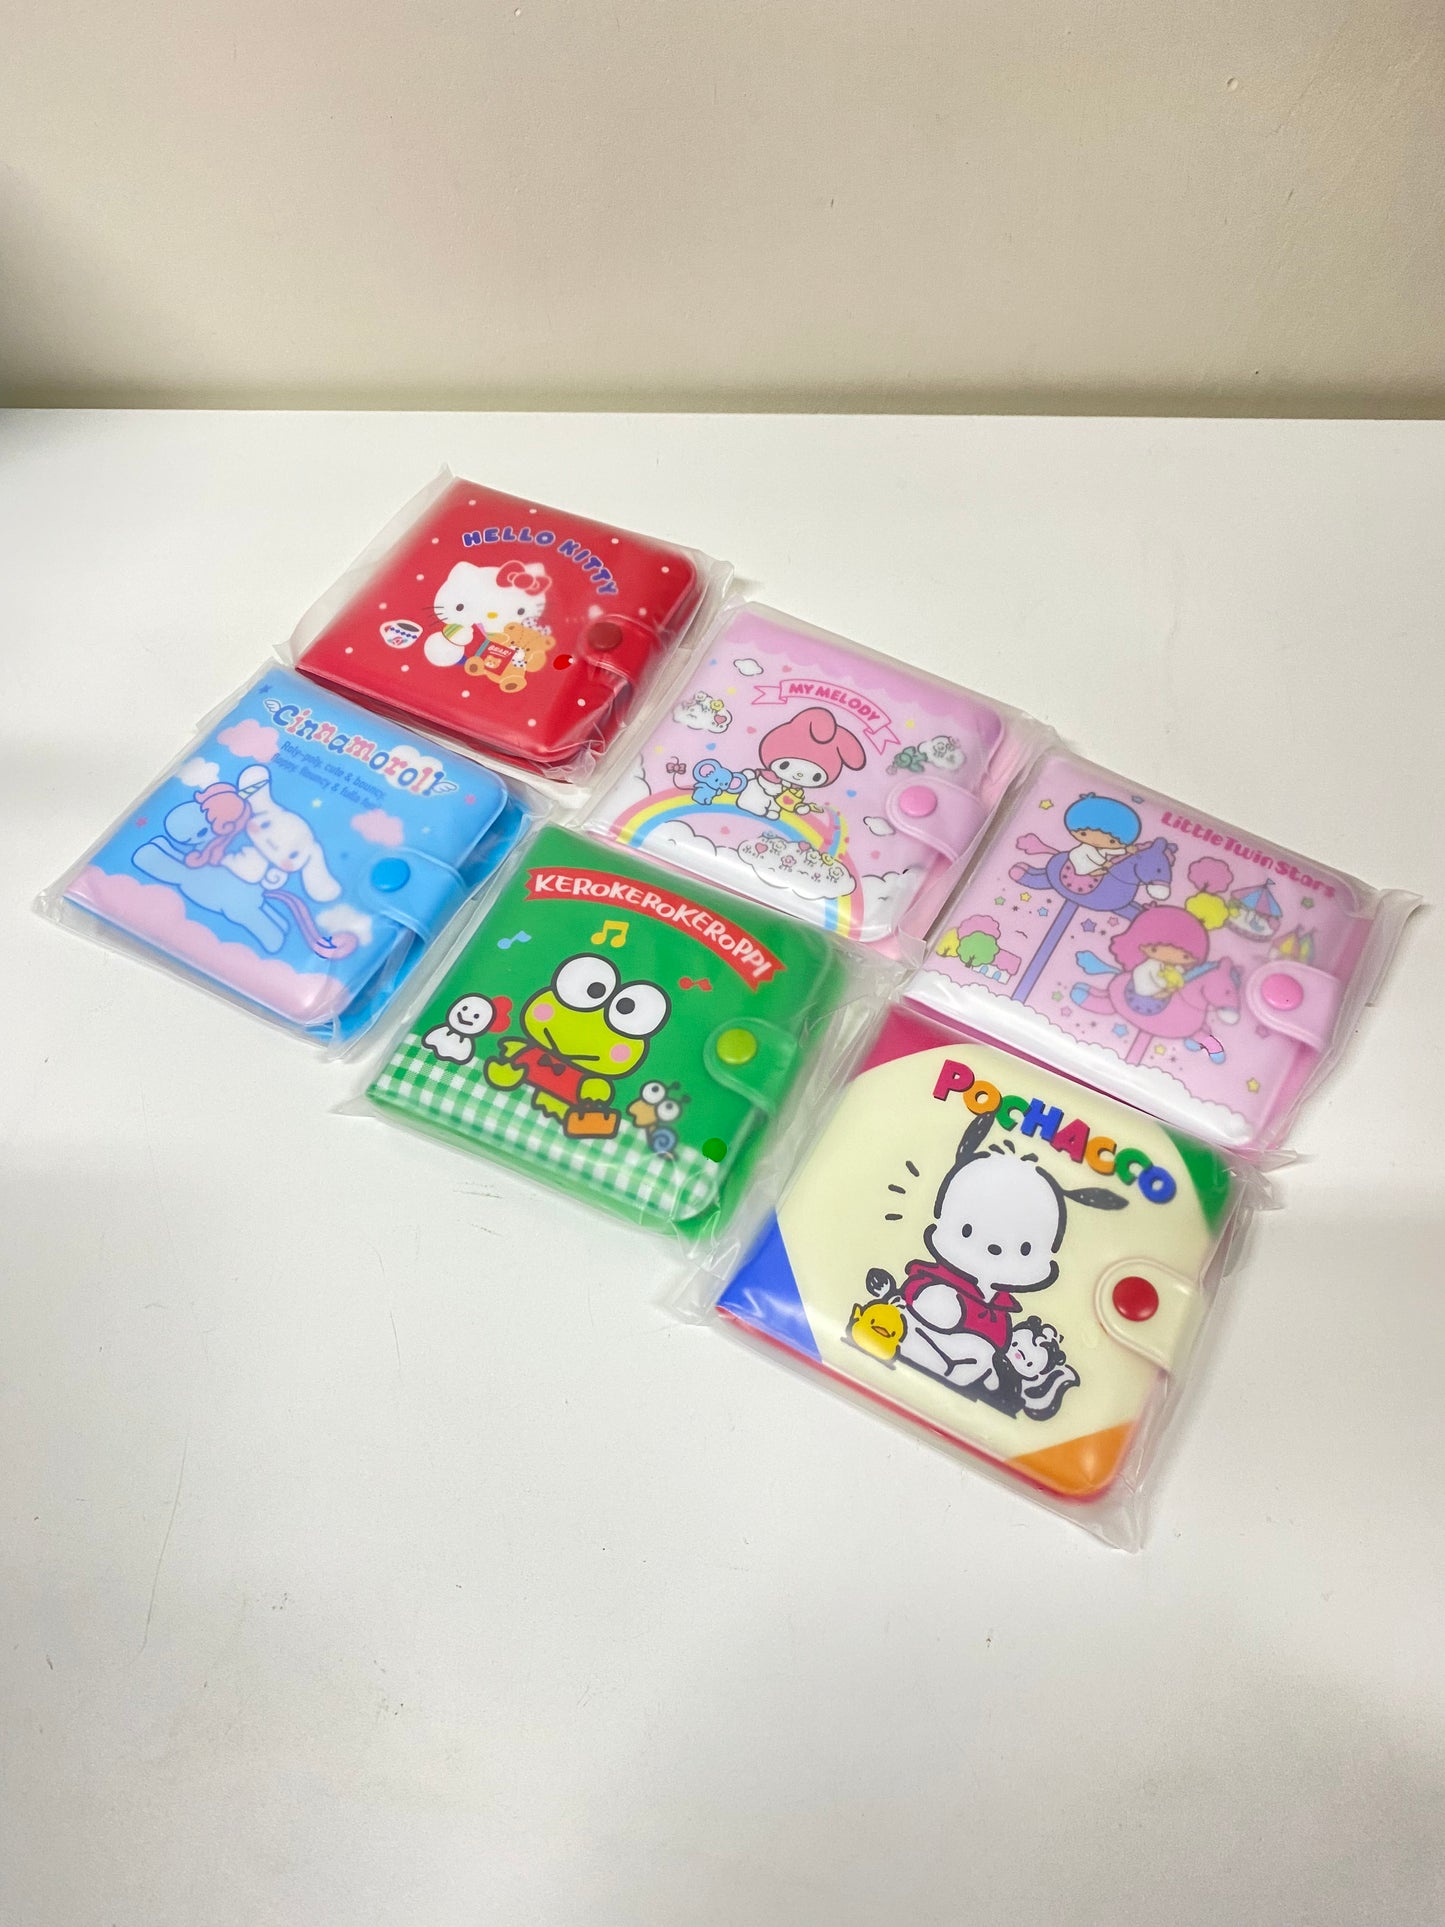 Japan Sanrio Small Plastic Case - Pochacco